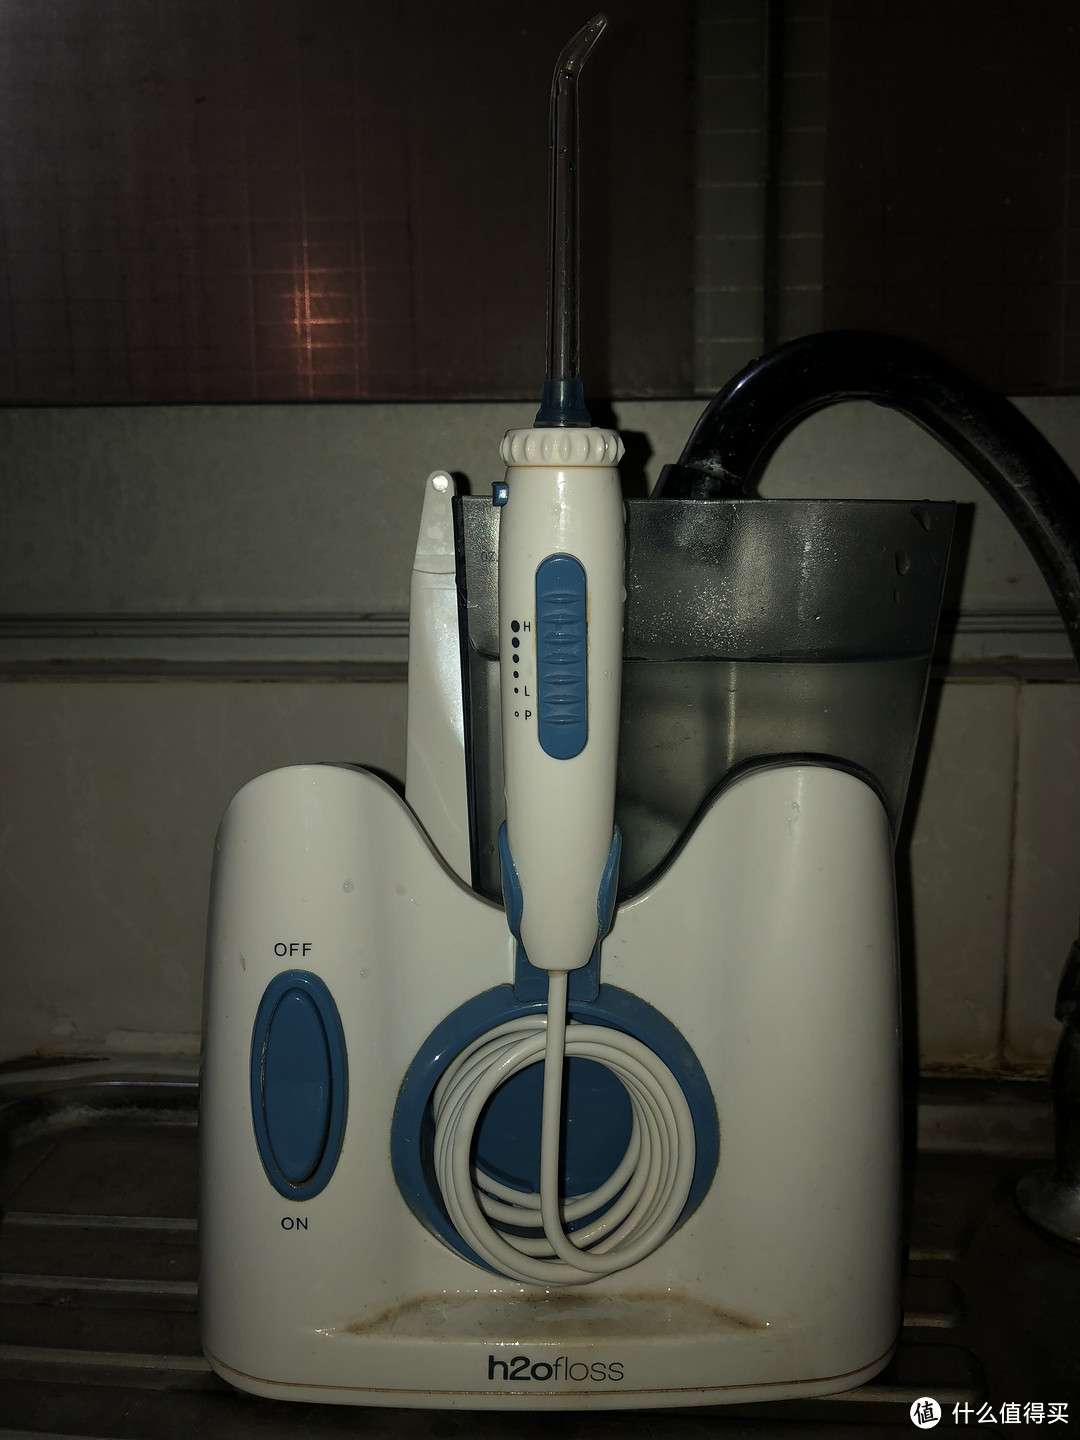 再添一员电气化的刷牙装备-贝医生声波电动牙刷